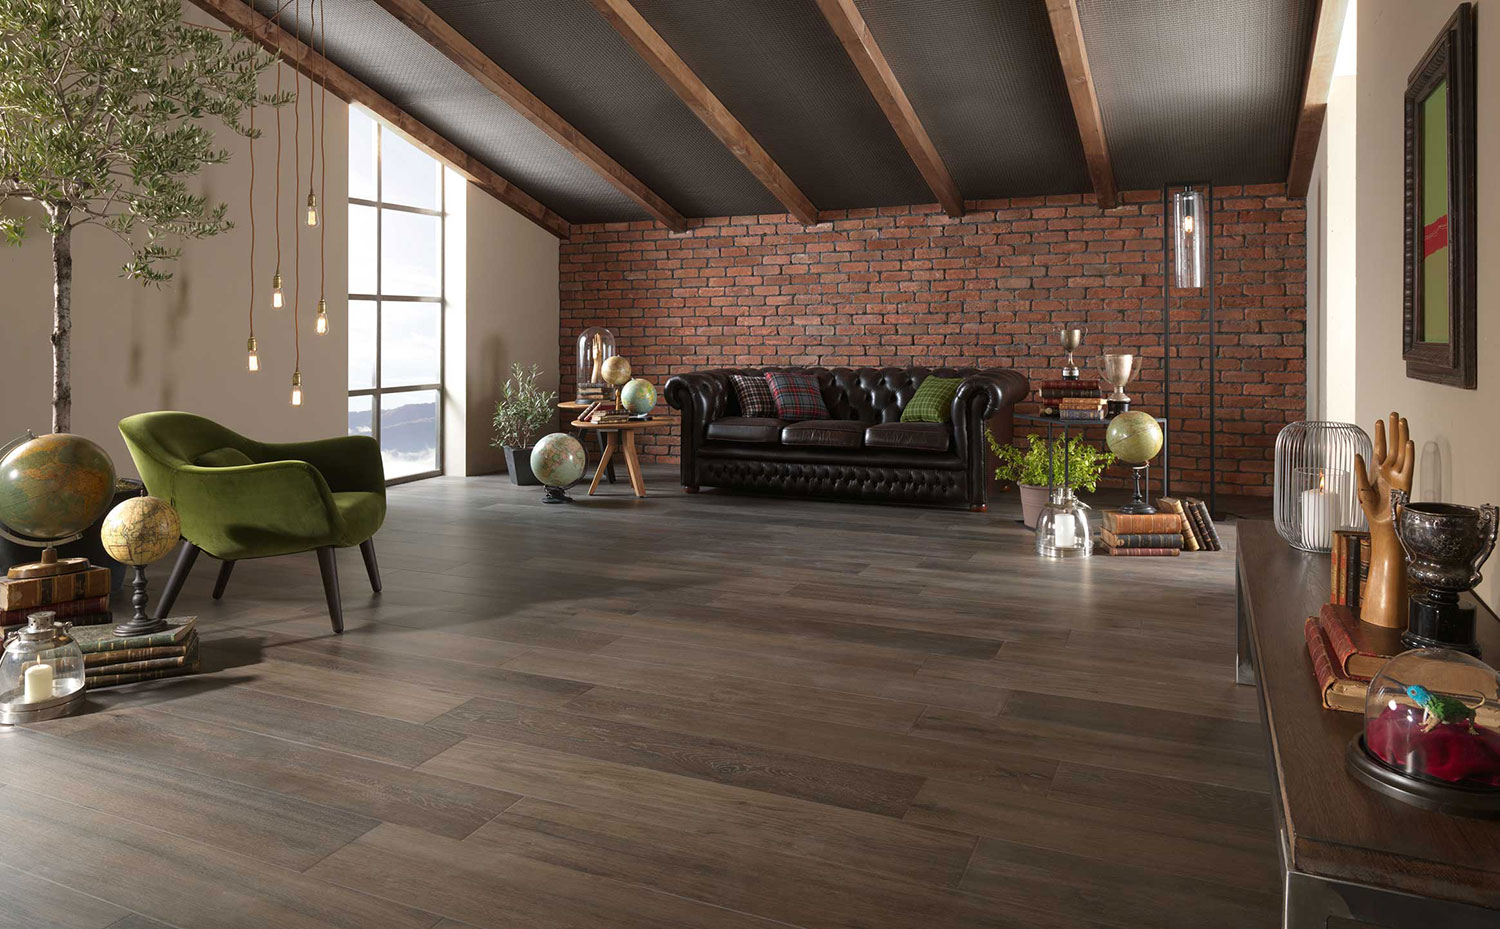 floor tiles for living room